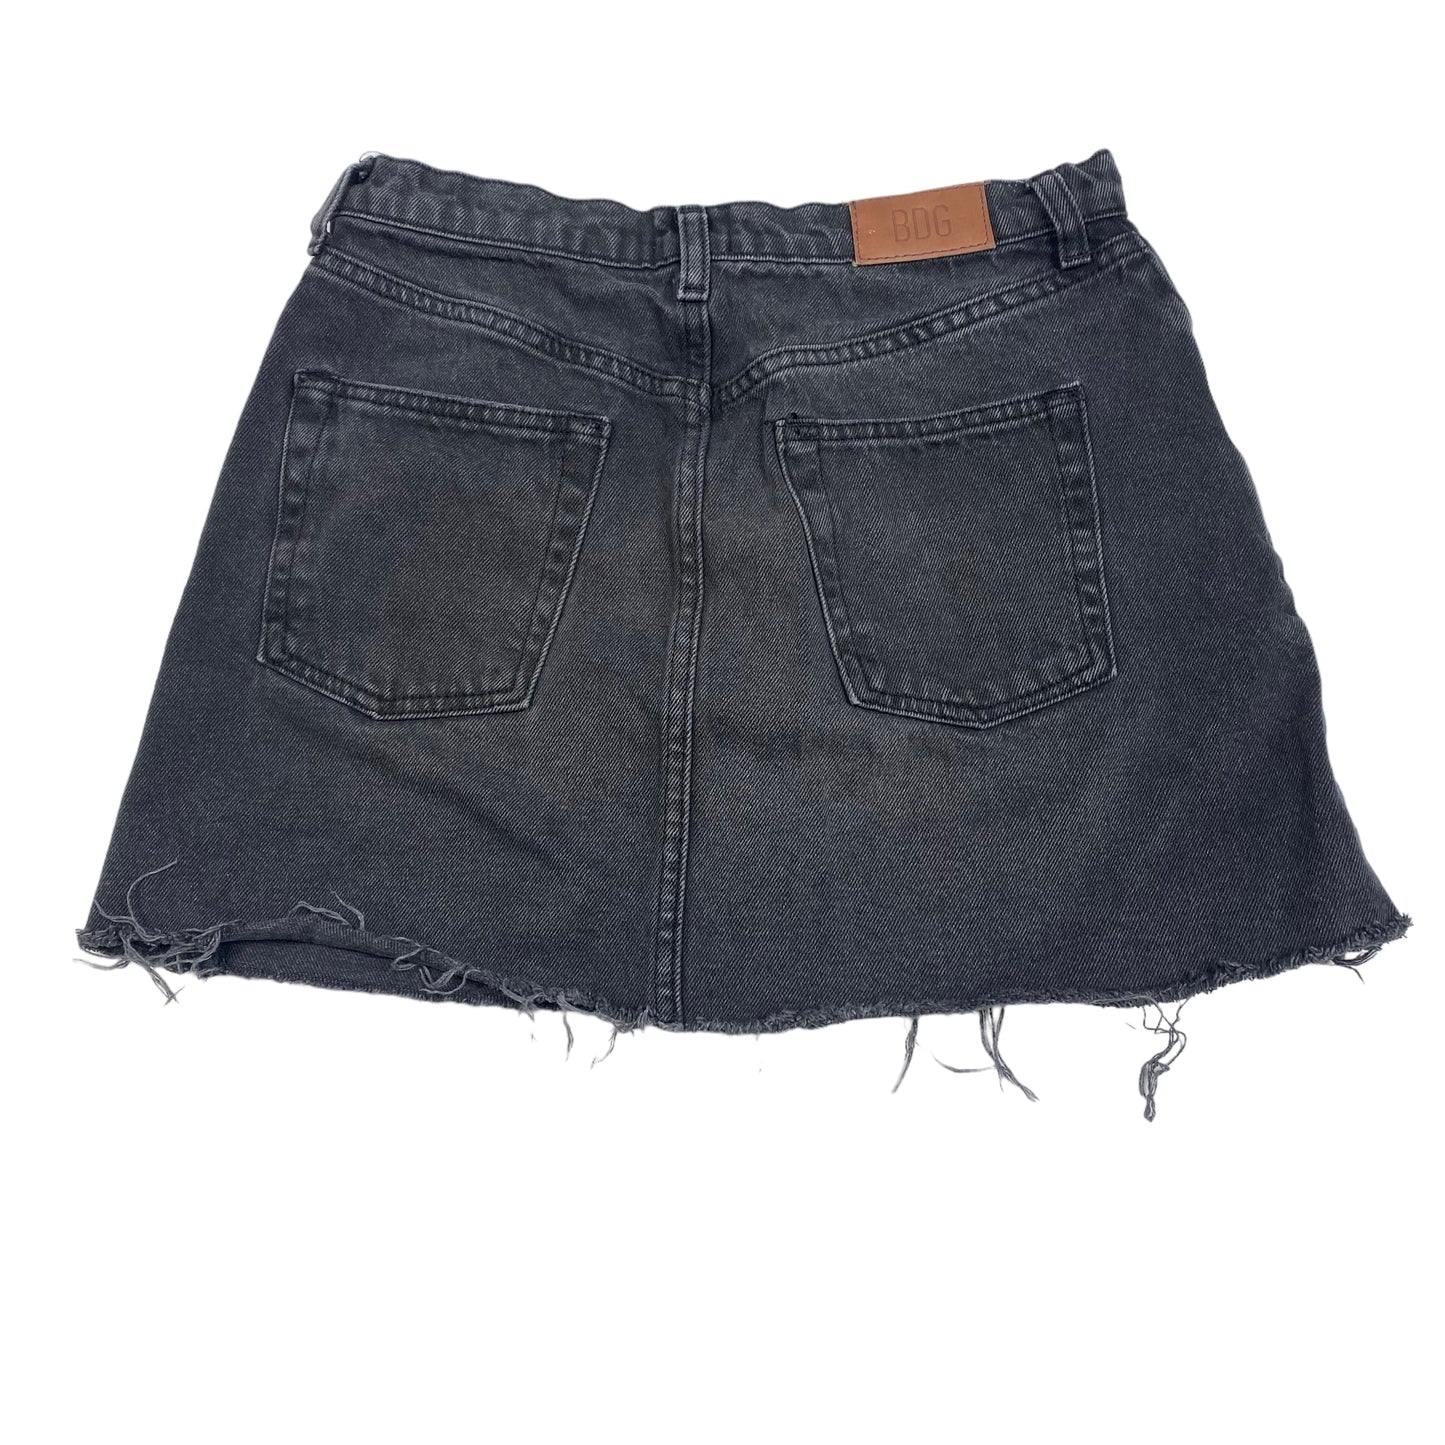 Skirt Mini & Short By Bdg  Size: S